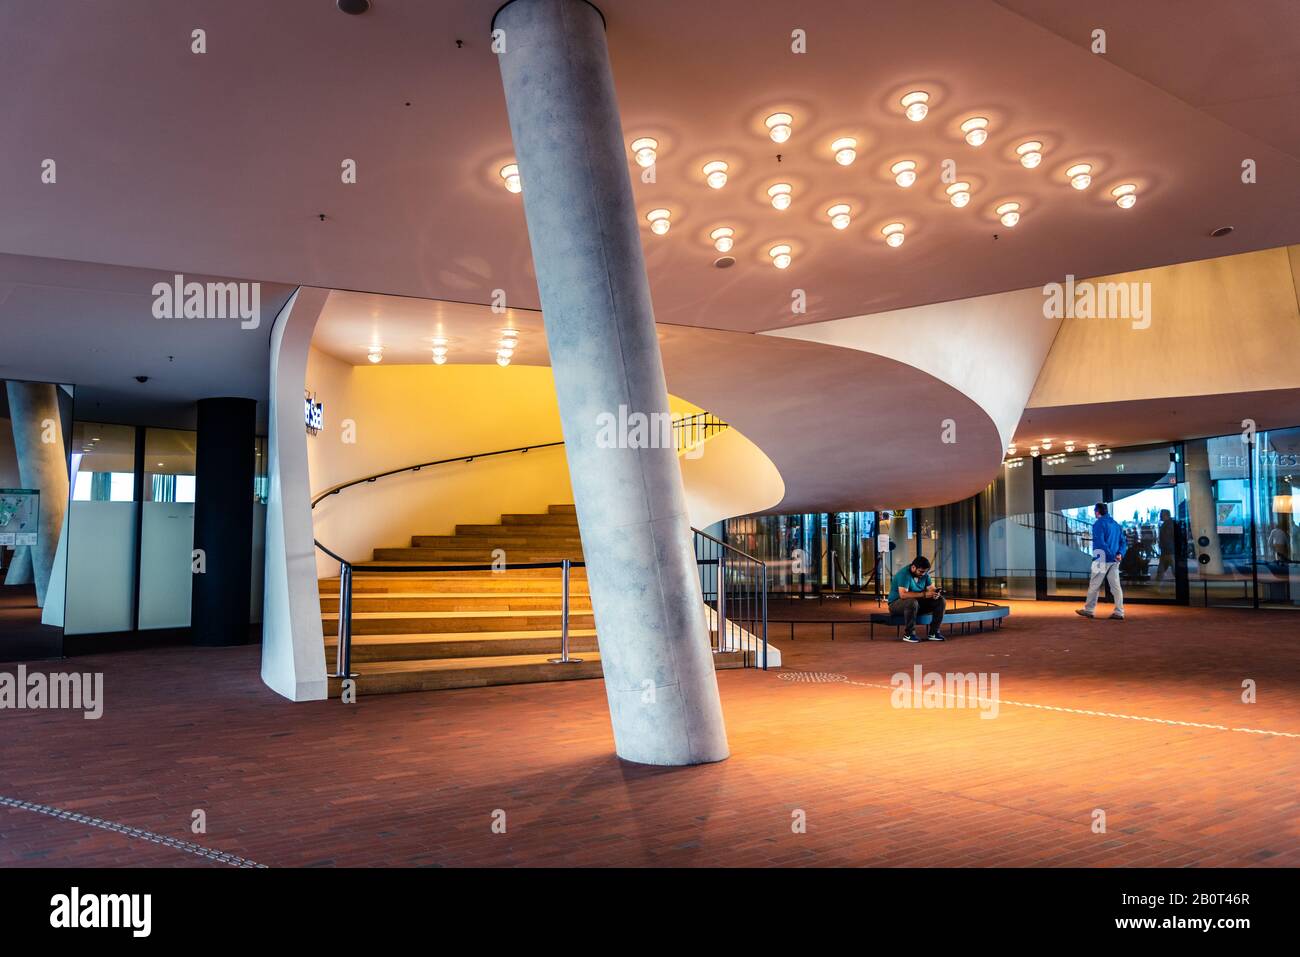 Hamburg, 4. August 2019: Innenansicht des Foyers der Elbphilharmonie oder Elbe-Philharmonie im HafenCity Quarter Stockfoto